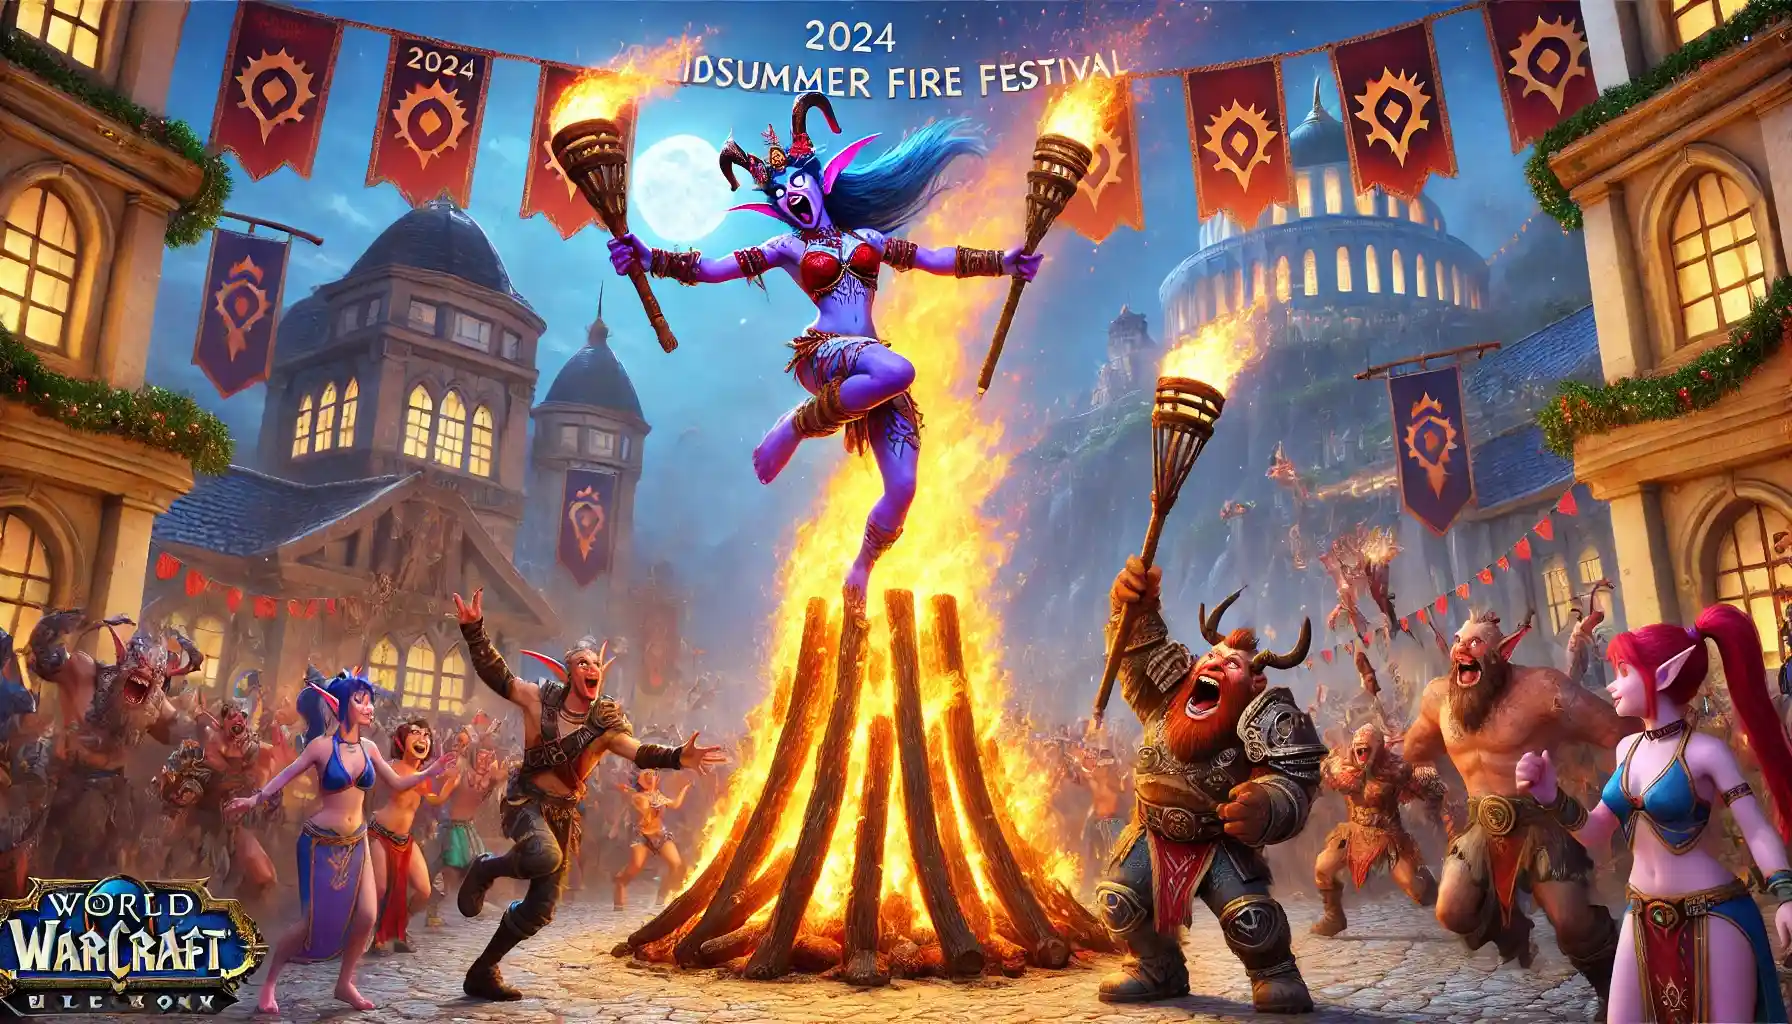 2024 Midsummer Fire Festival Overview